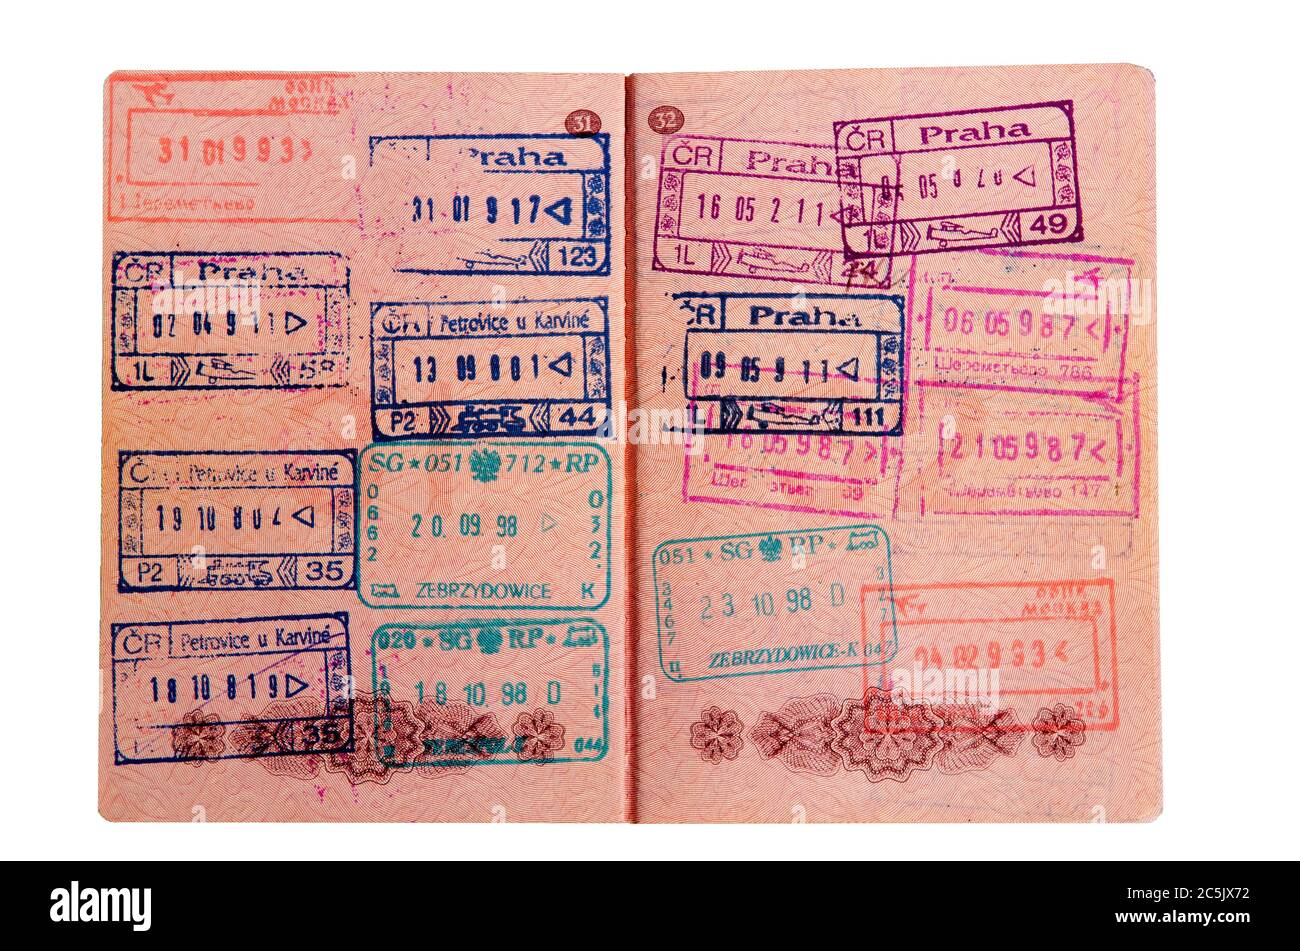 Passaporto russo impresso sul valico di frontiera Foto Stock